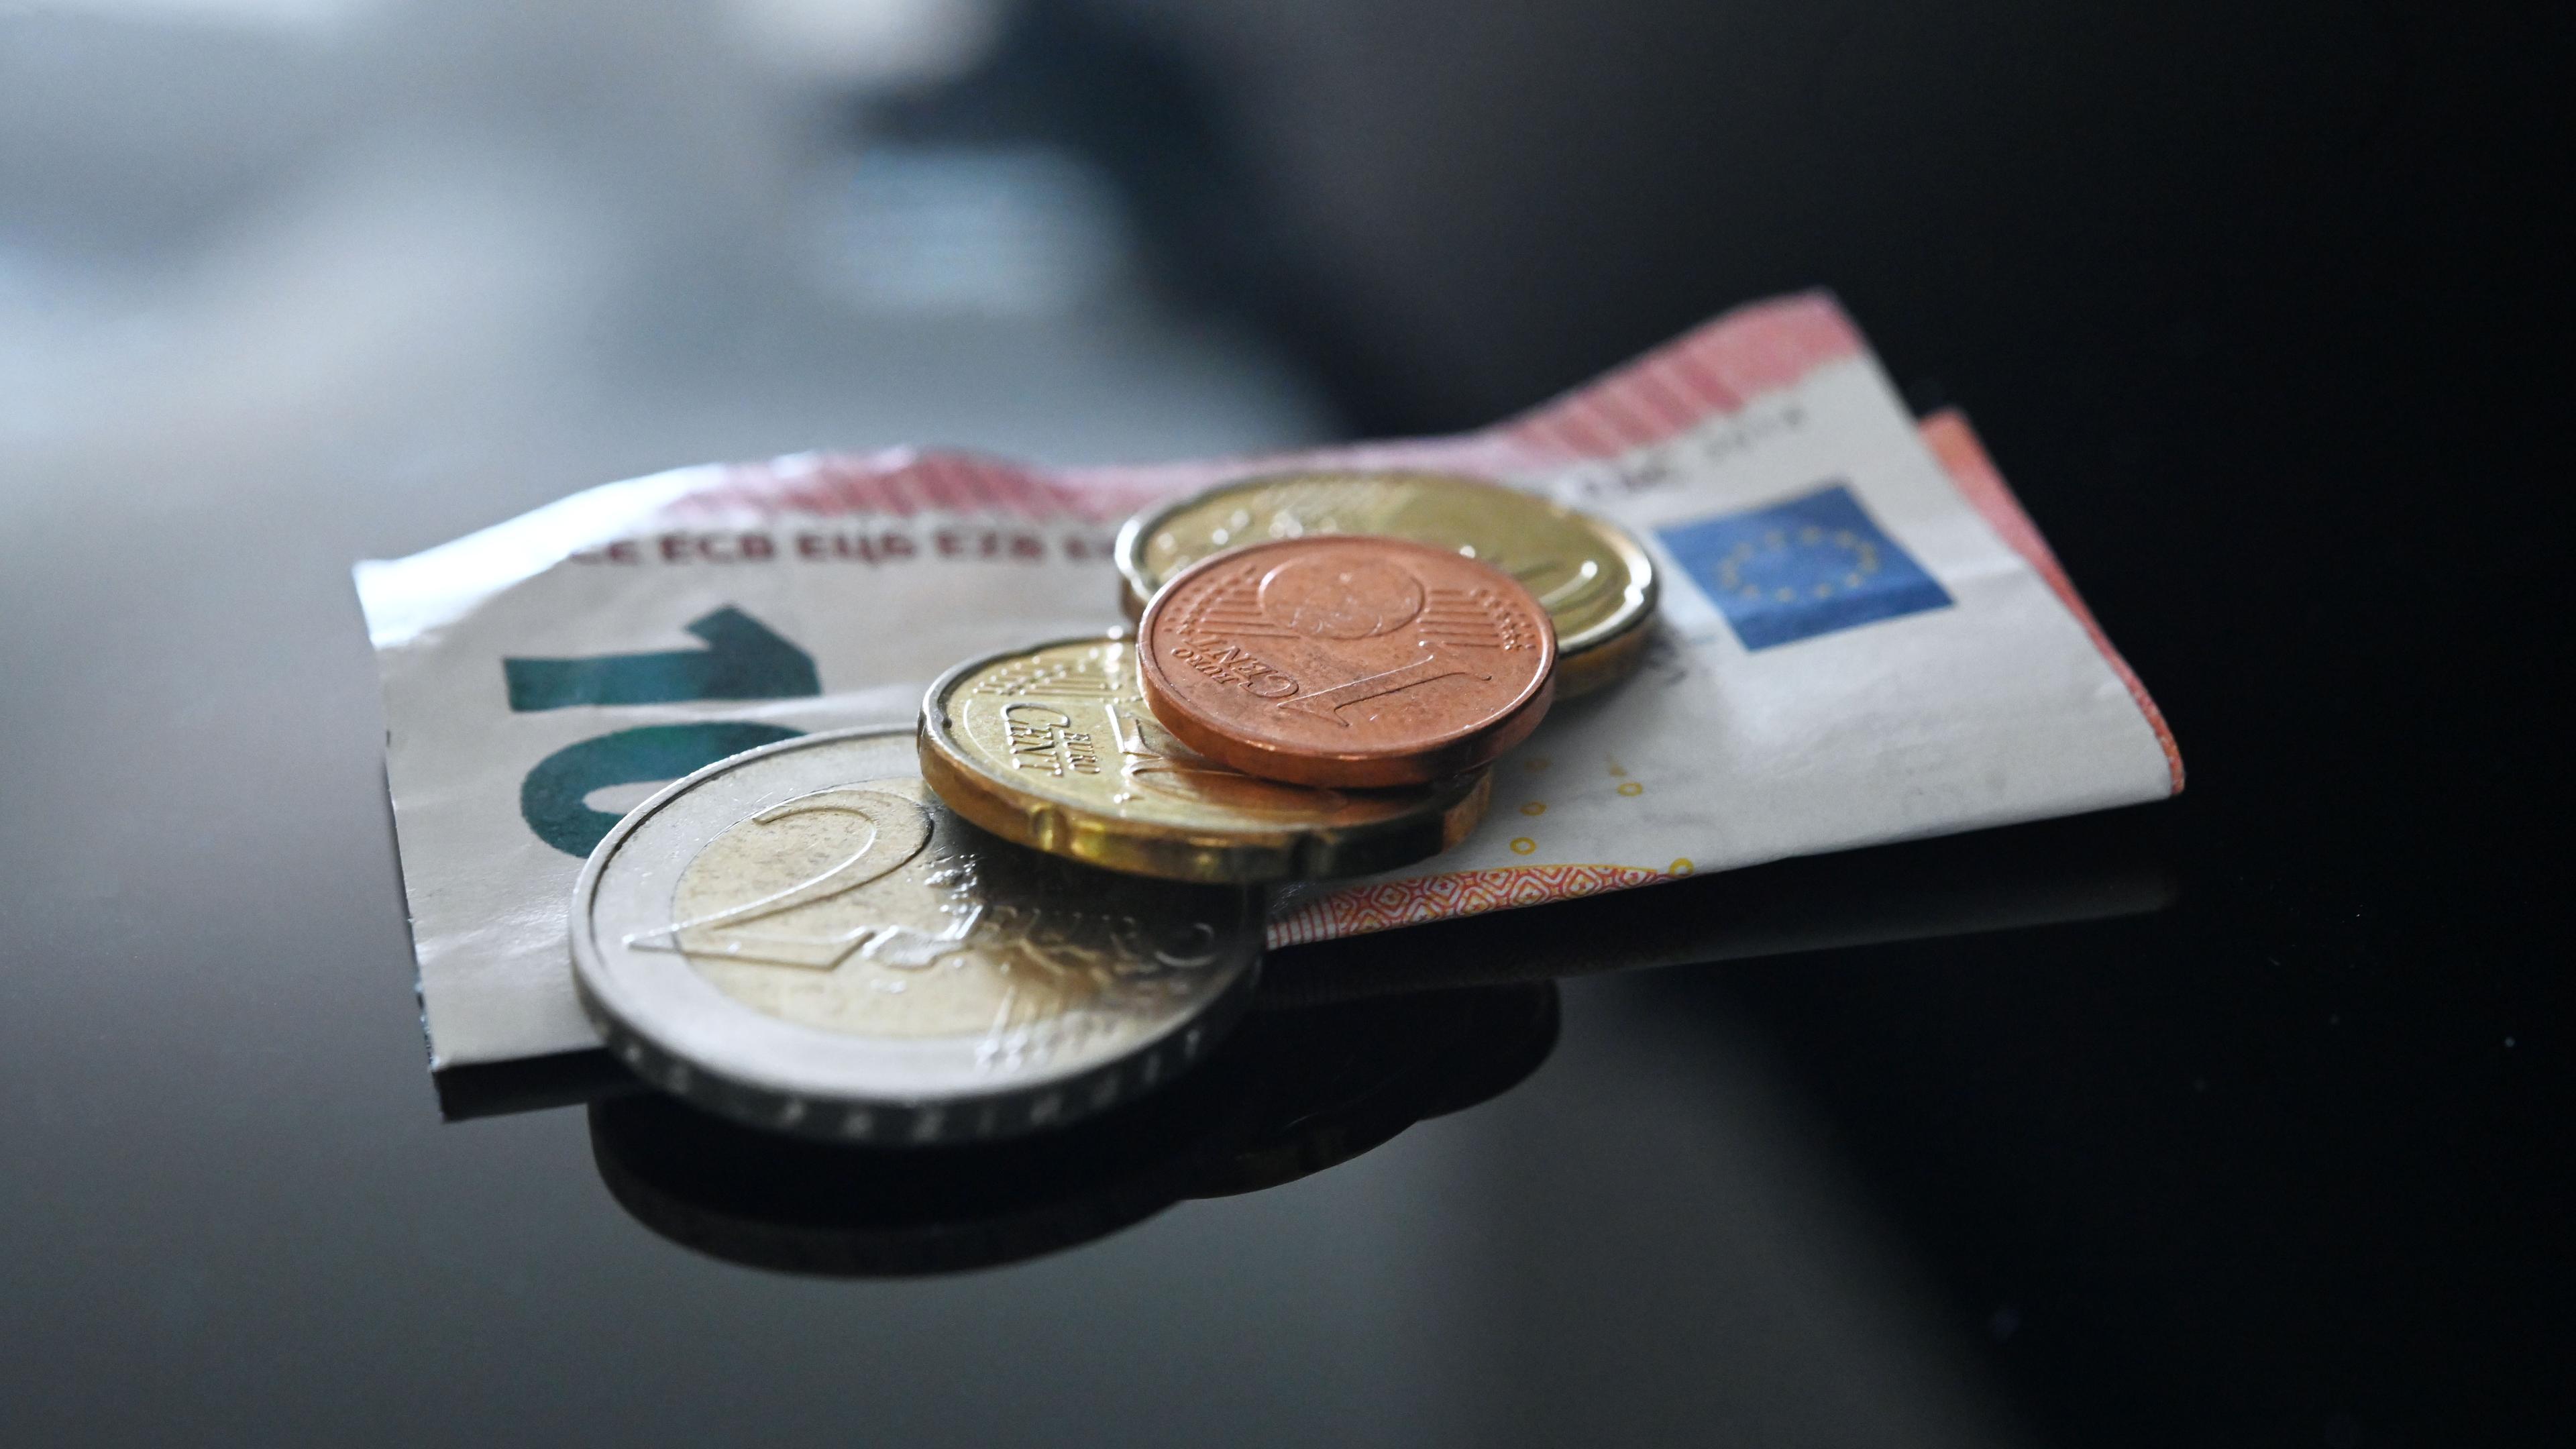 Münzen und ein Geldschein im Wert von insgesamt 12,41 Euro liegen auf einer schwarzen Fläche.